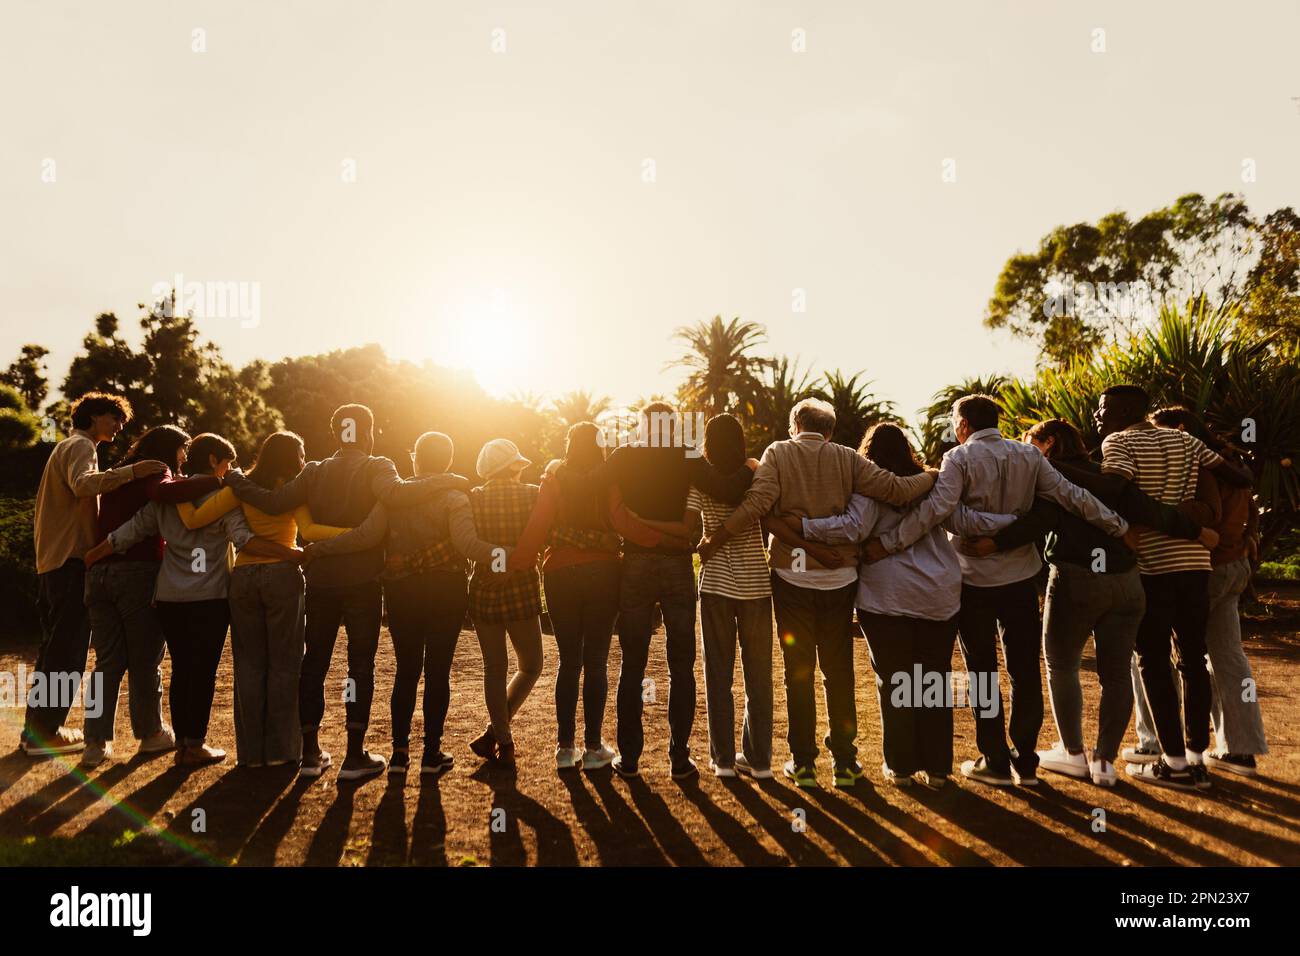 Rückblick auf glückliche, generationsübergreifende Menschen, die während des Sonnenuntergangs in einem öffentlichen Park Spaß haben - Community- und Support-Konzept Stockfoto